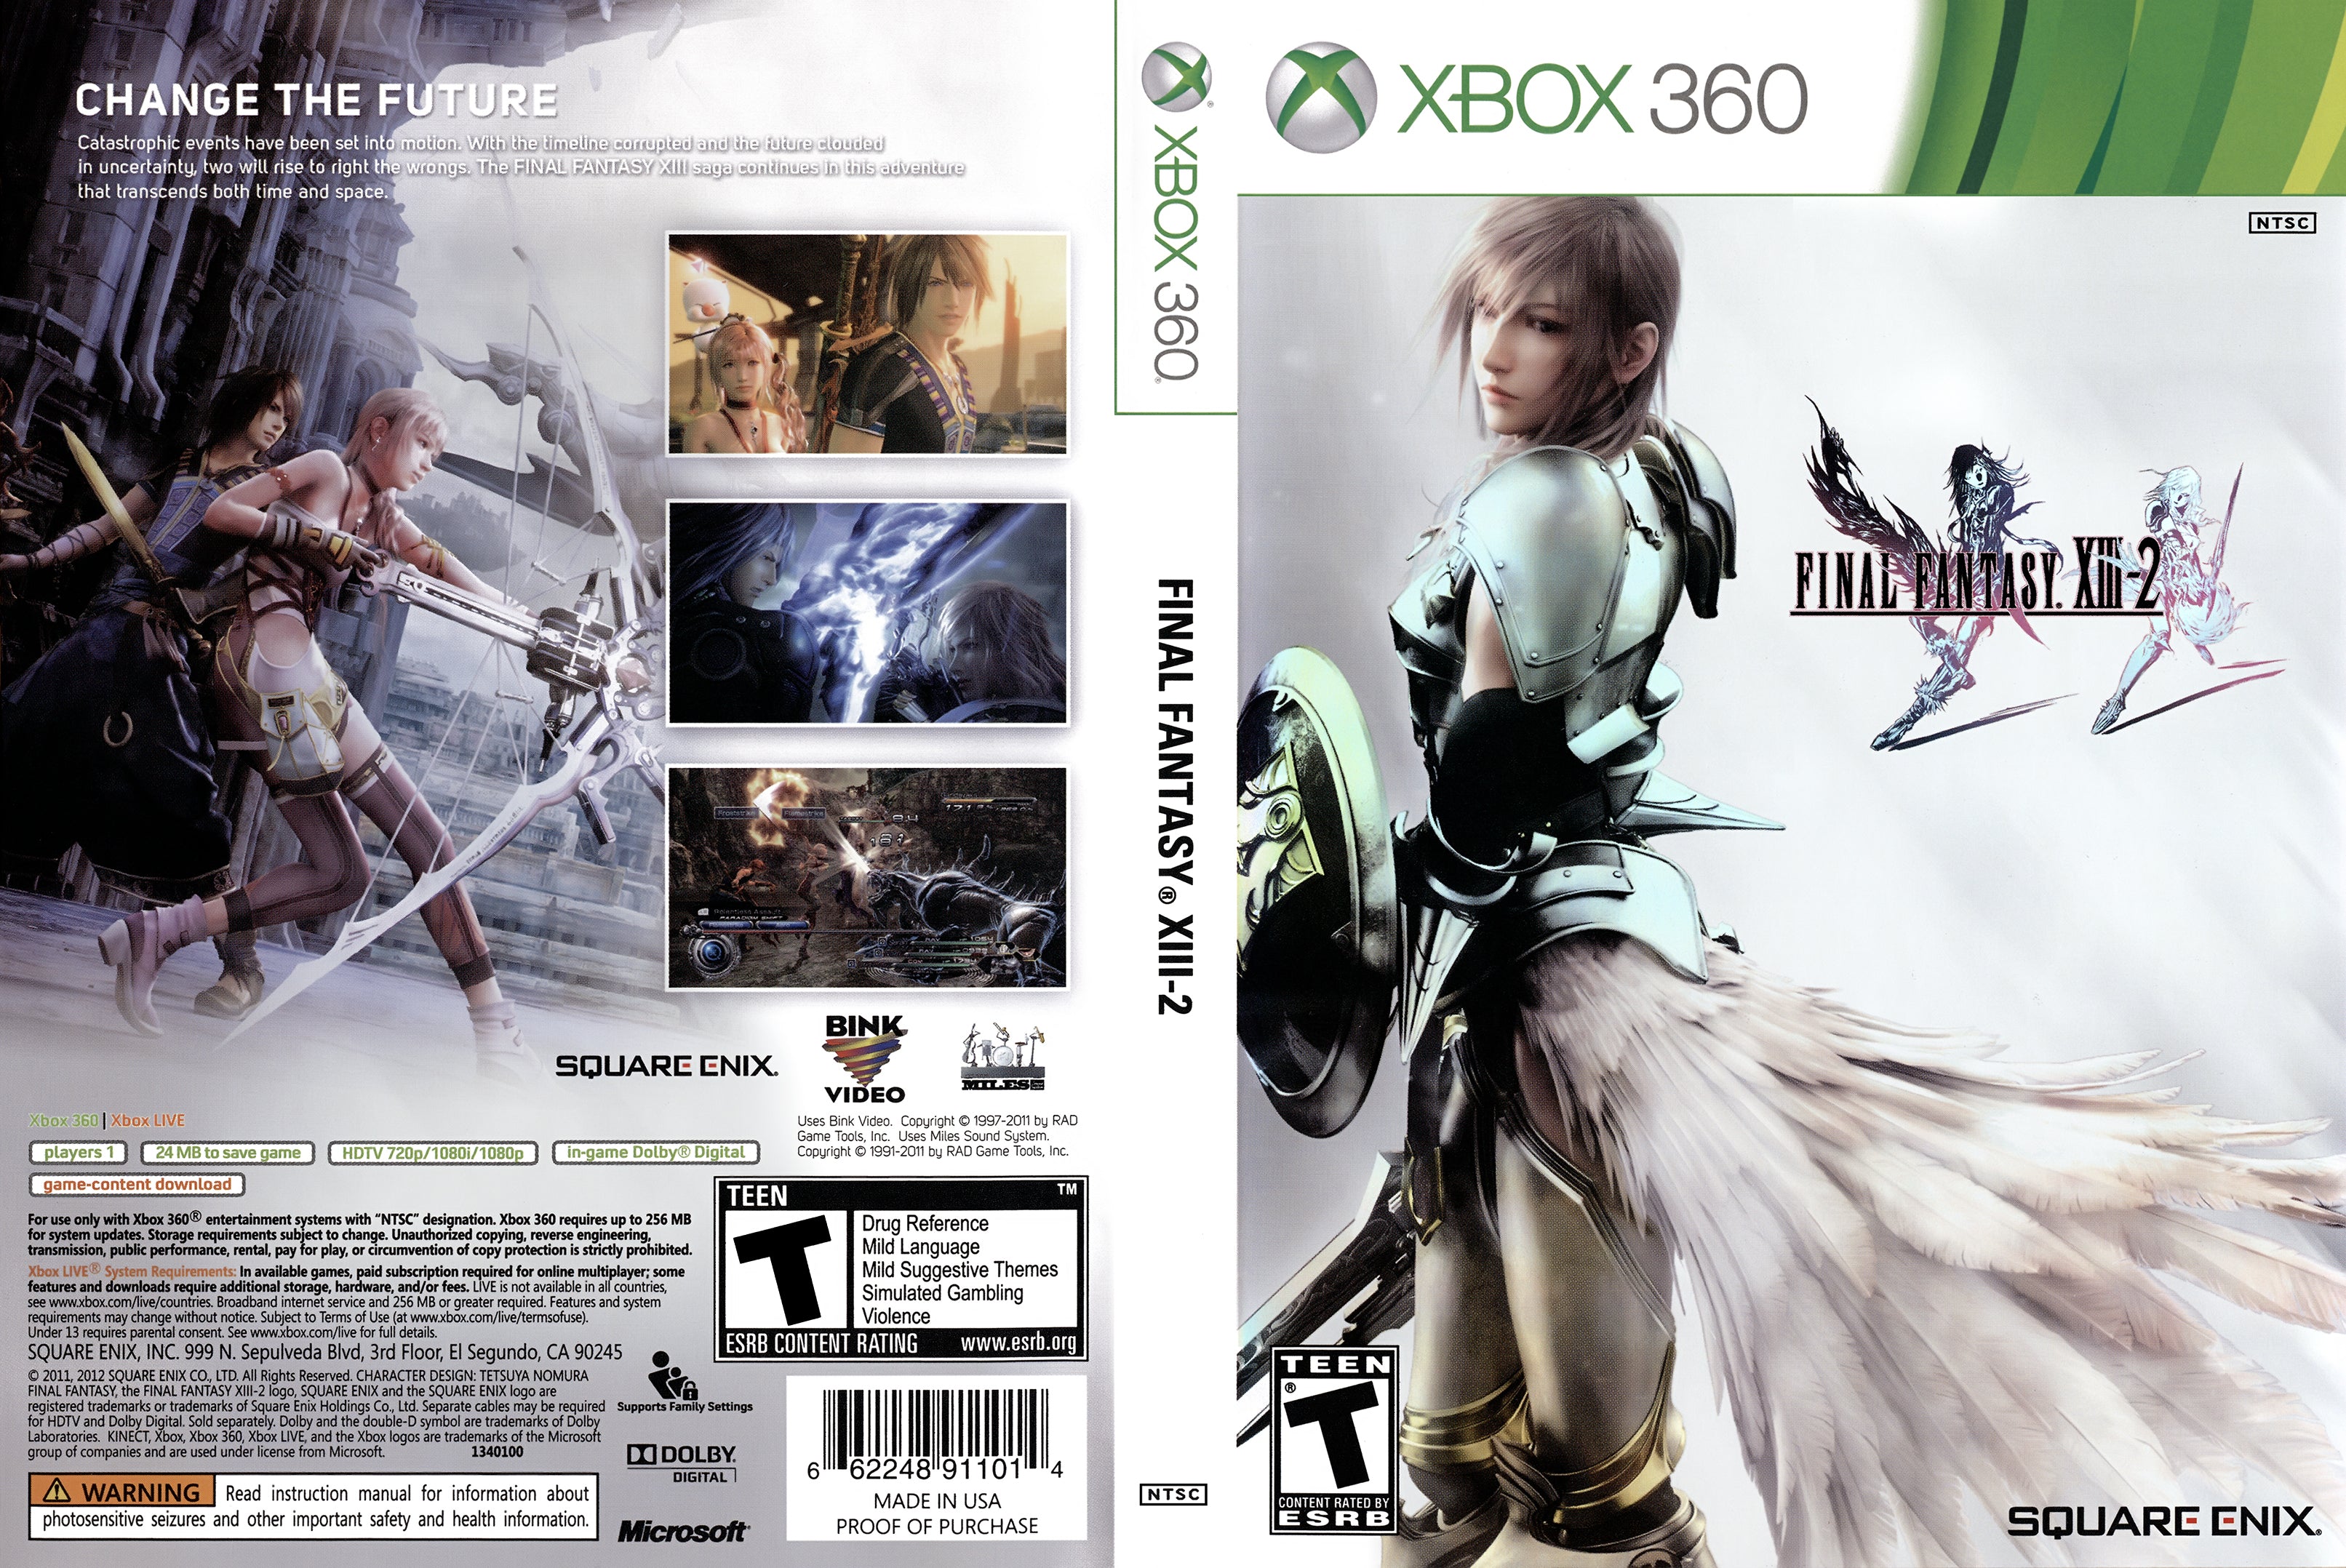 FINAL FANTASY XIII-2 - Xbox 360, Xbox 360